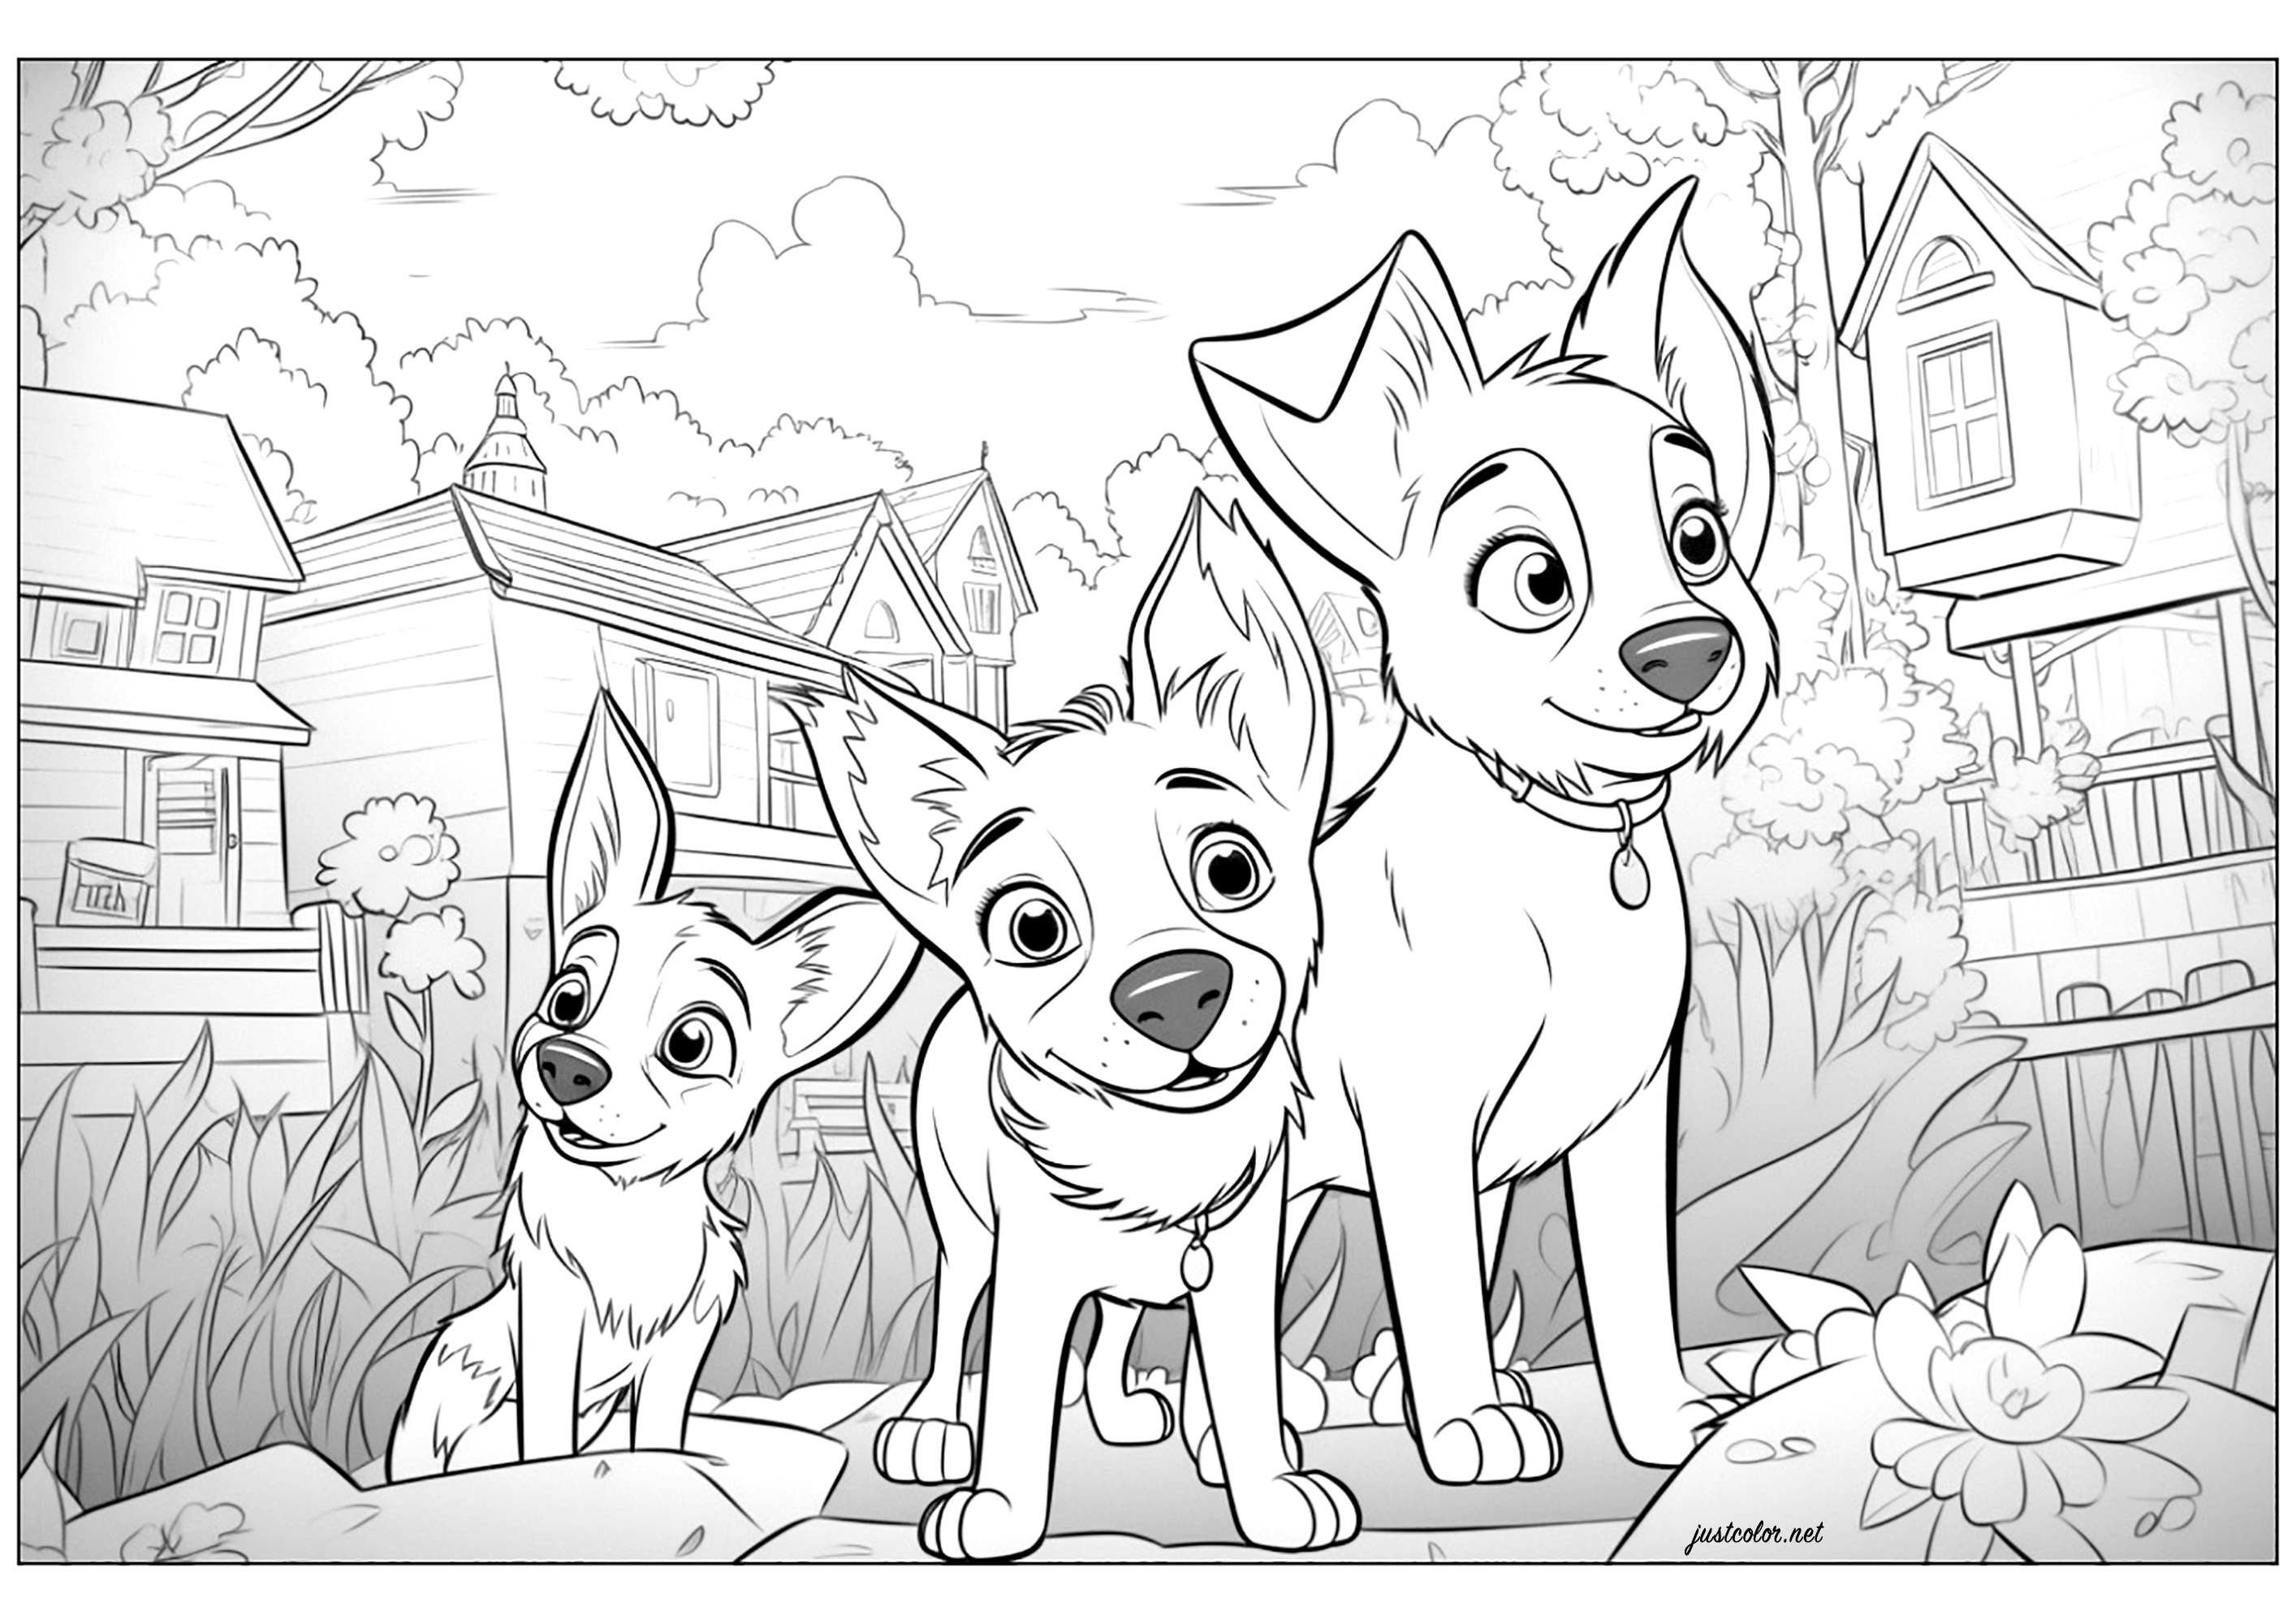 Drei Hunde im Disney-Pixar-Stil gezeichnet. Malen Sie auch alle Häuser im Hintergrund dieser Originalillustration aus.